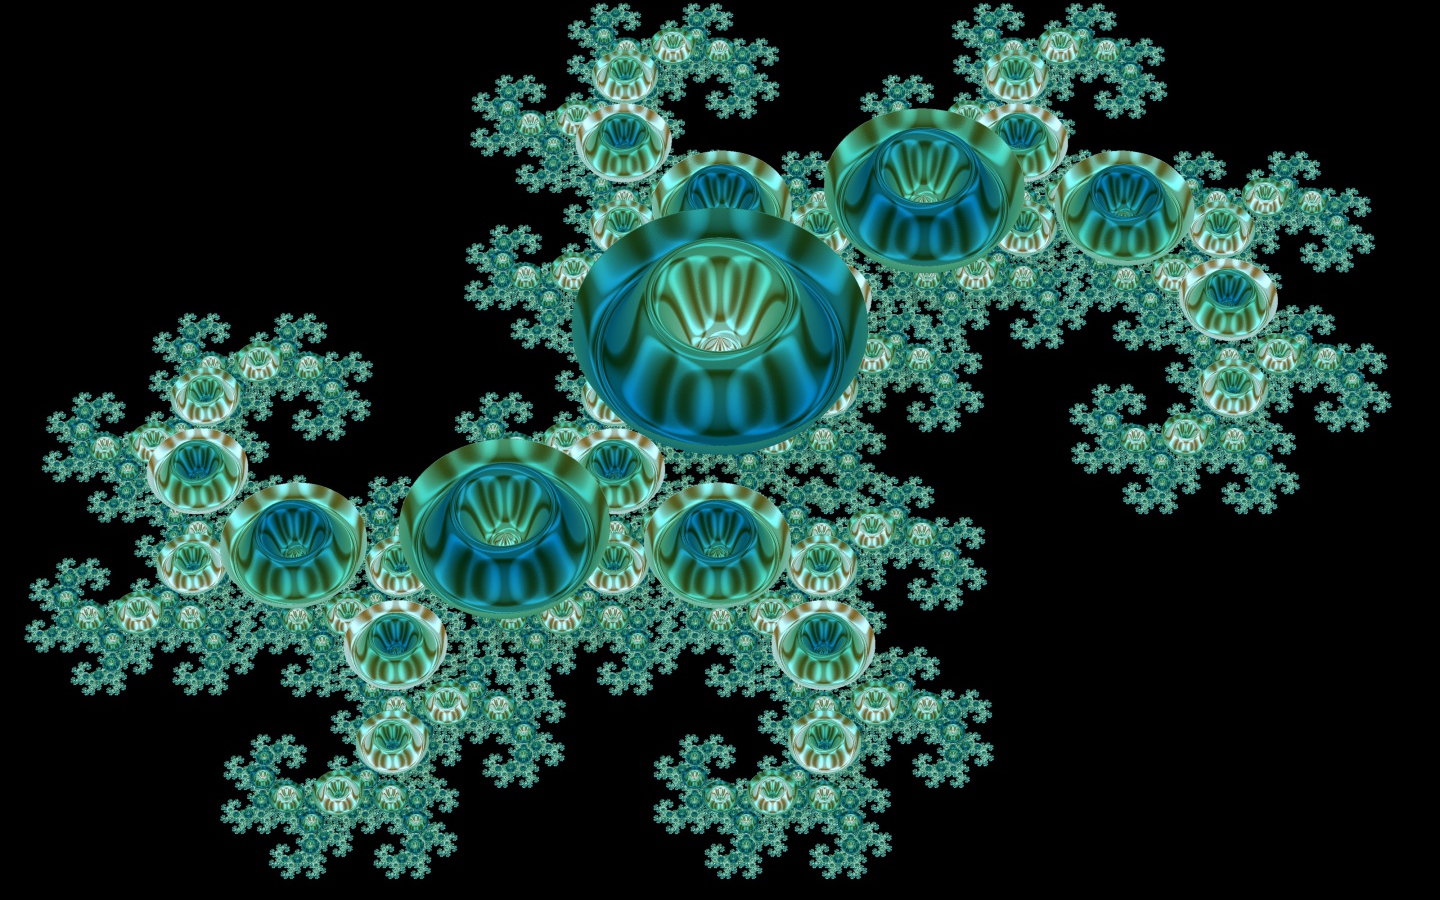 Blue unusual fractal pattern on black background